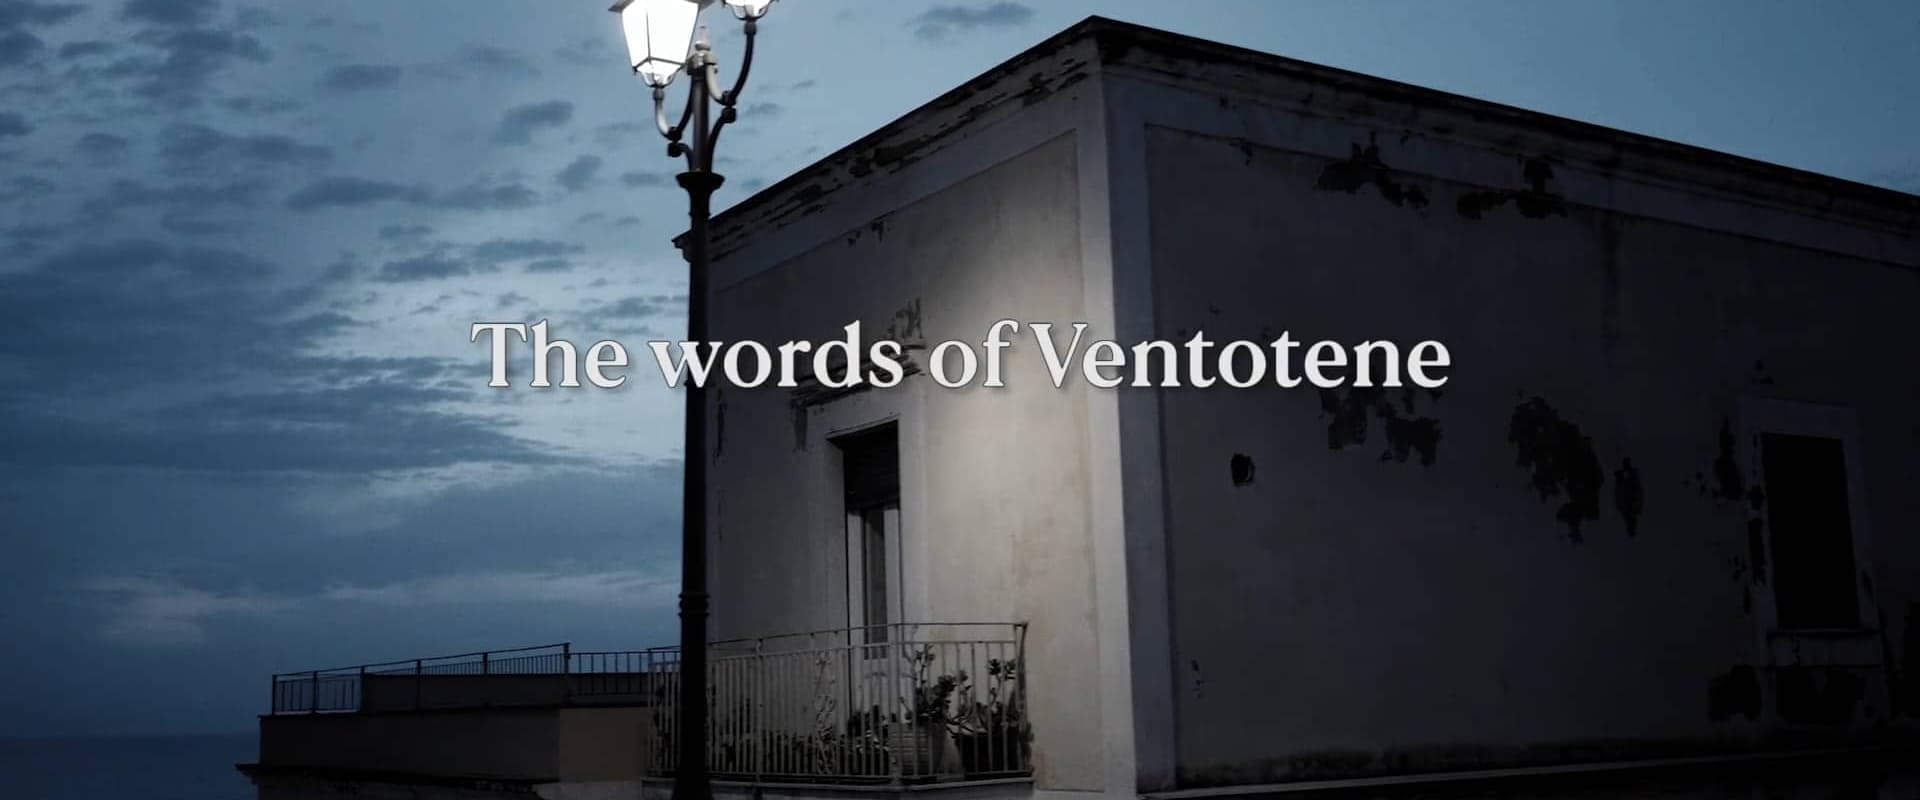 The words of Ventotene